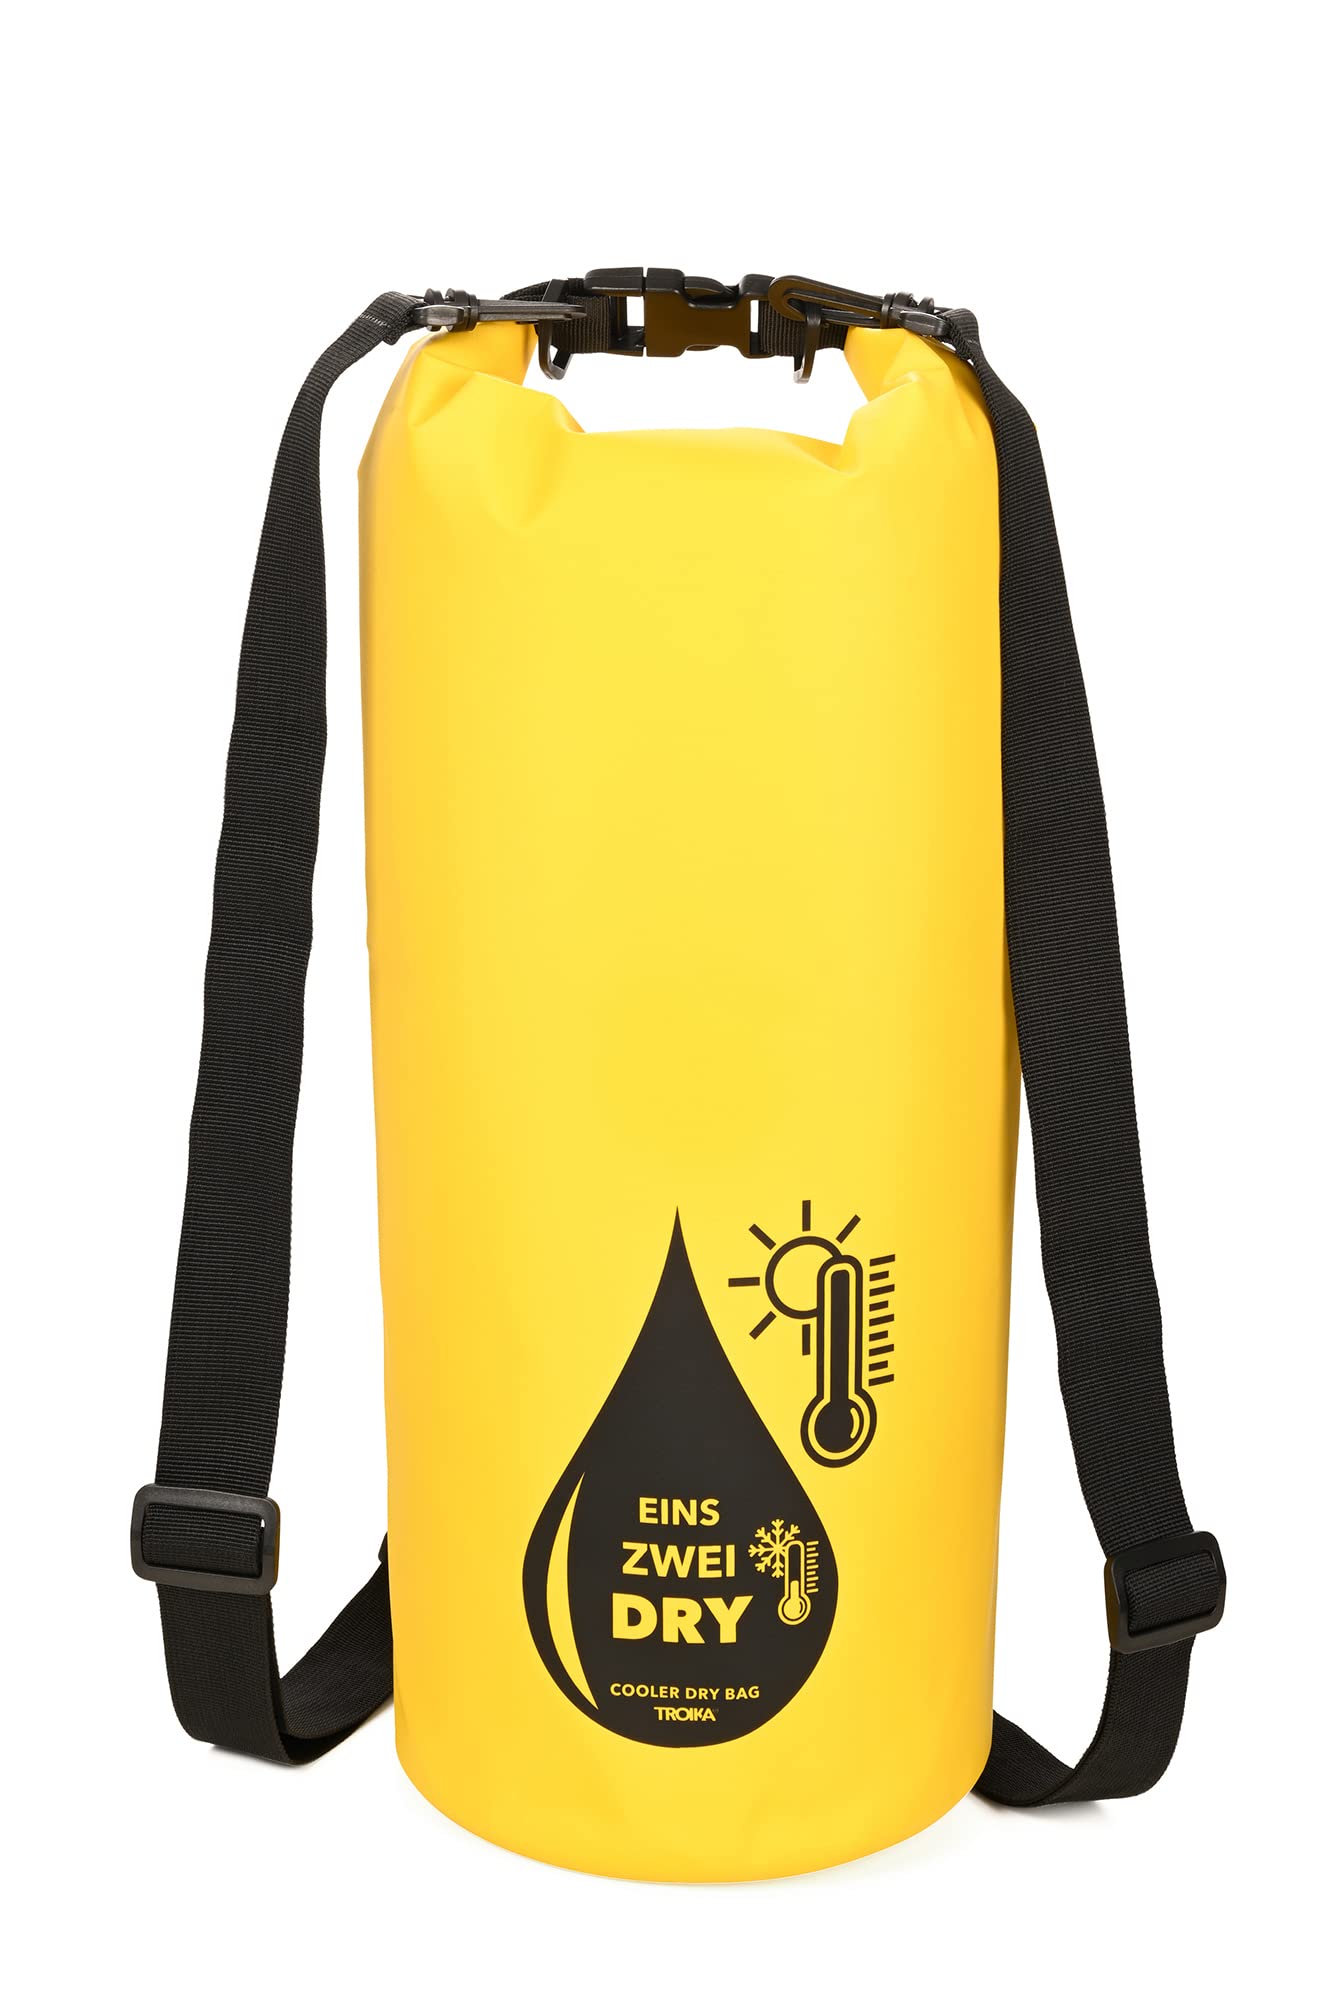 Troika Outdoor Rucksack mit Kühlfunktion und Roll-Top 1-2 Drey Bag aus Polyester in der Farbe Gelb-Schwarz, RUC03/YE